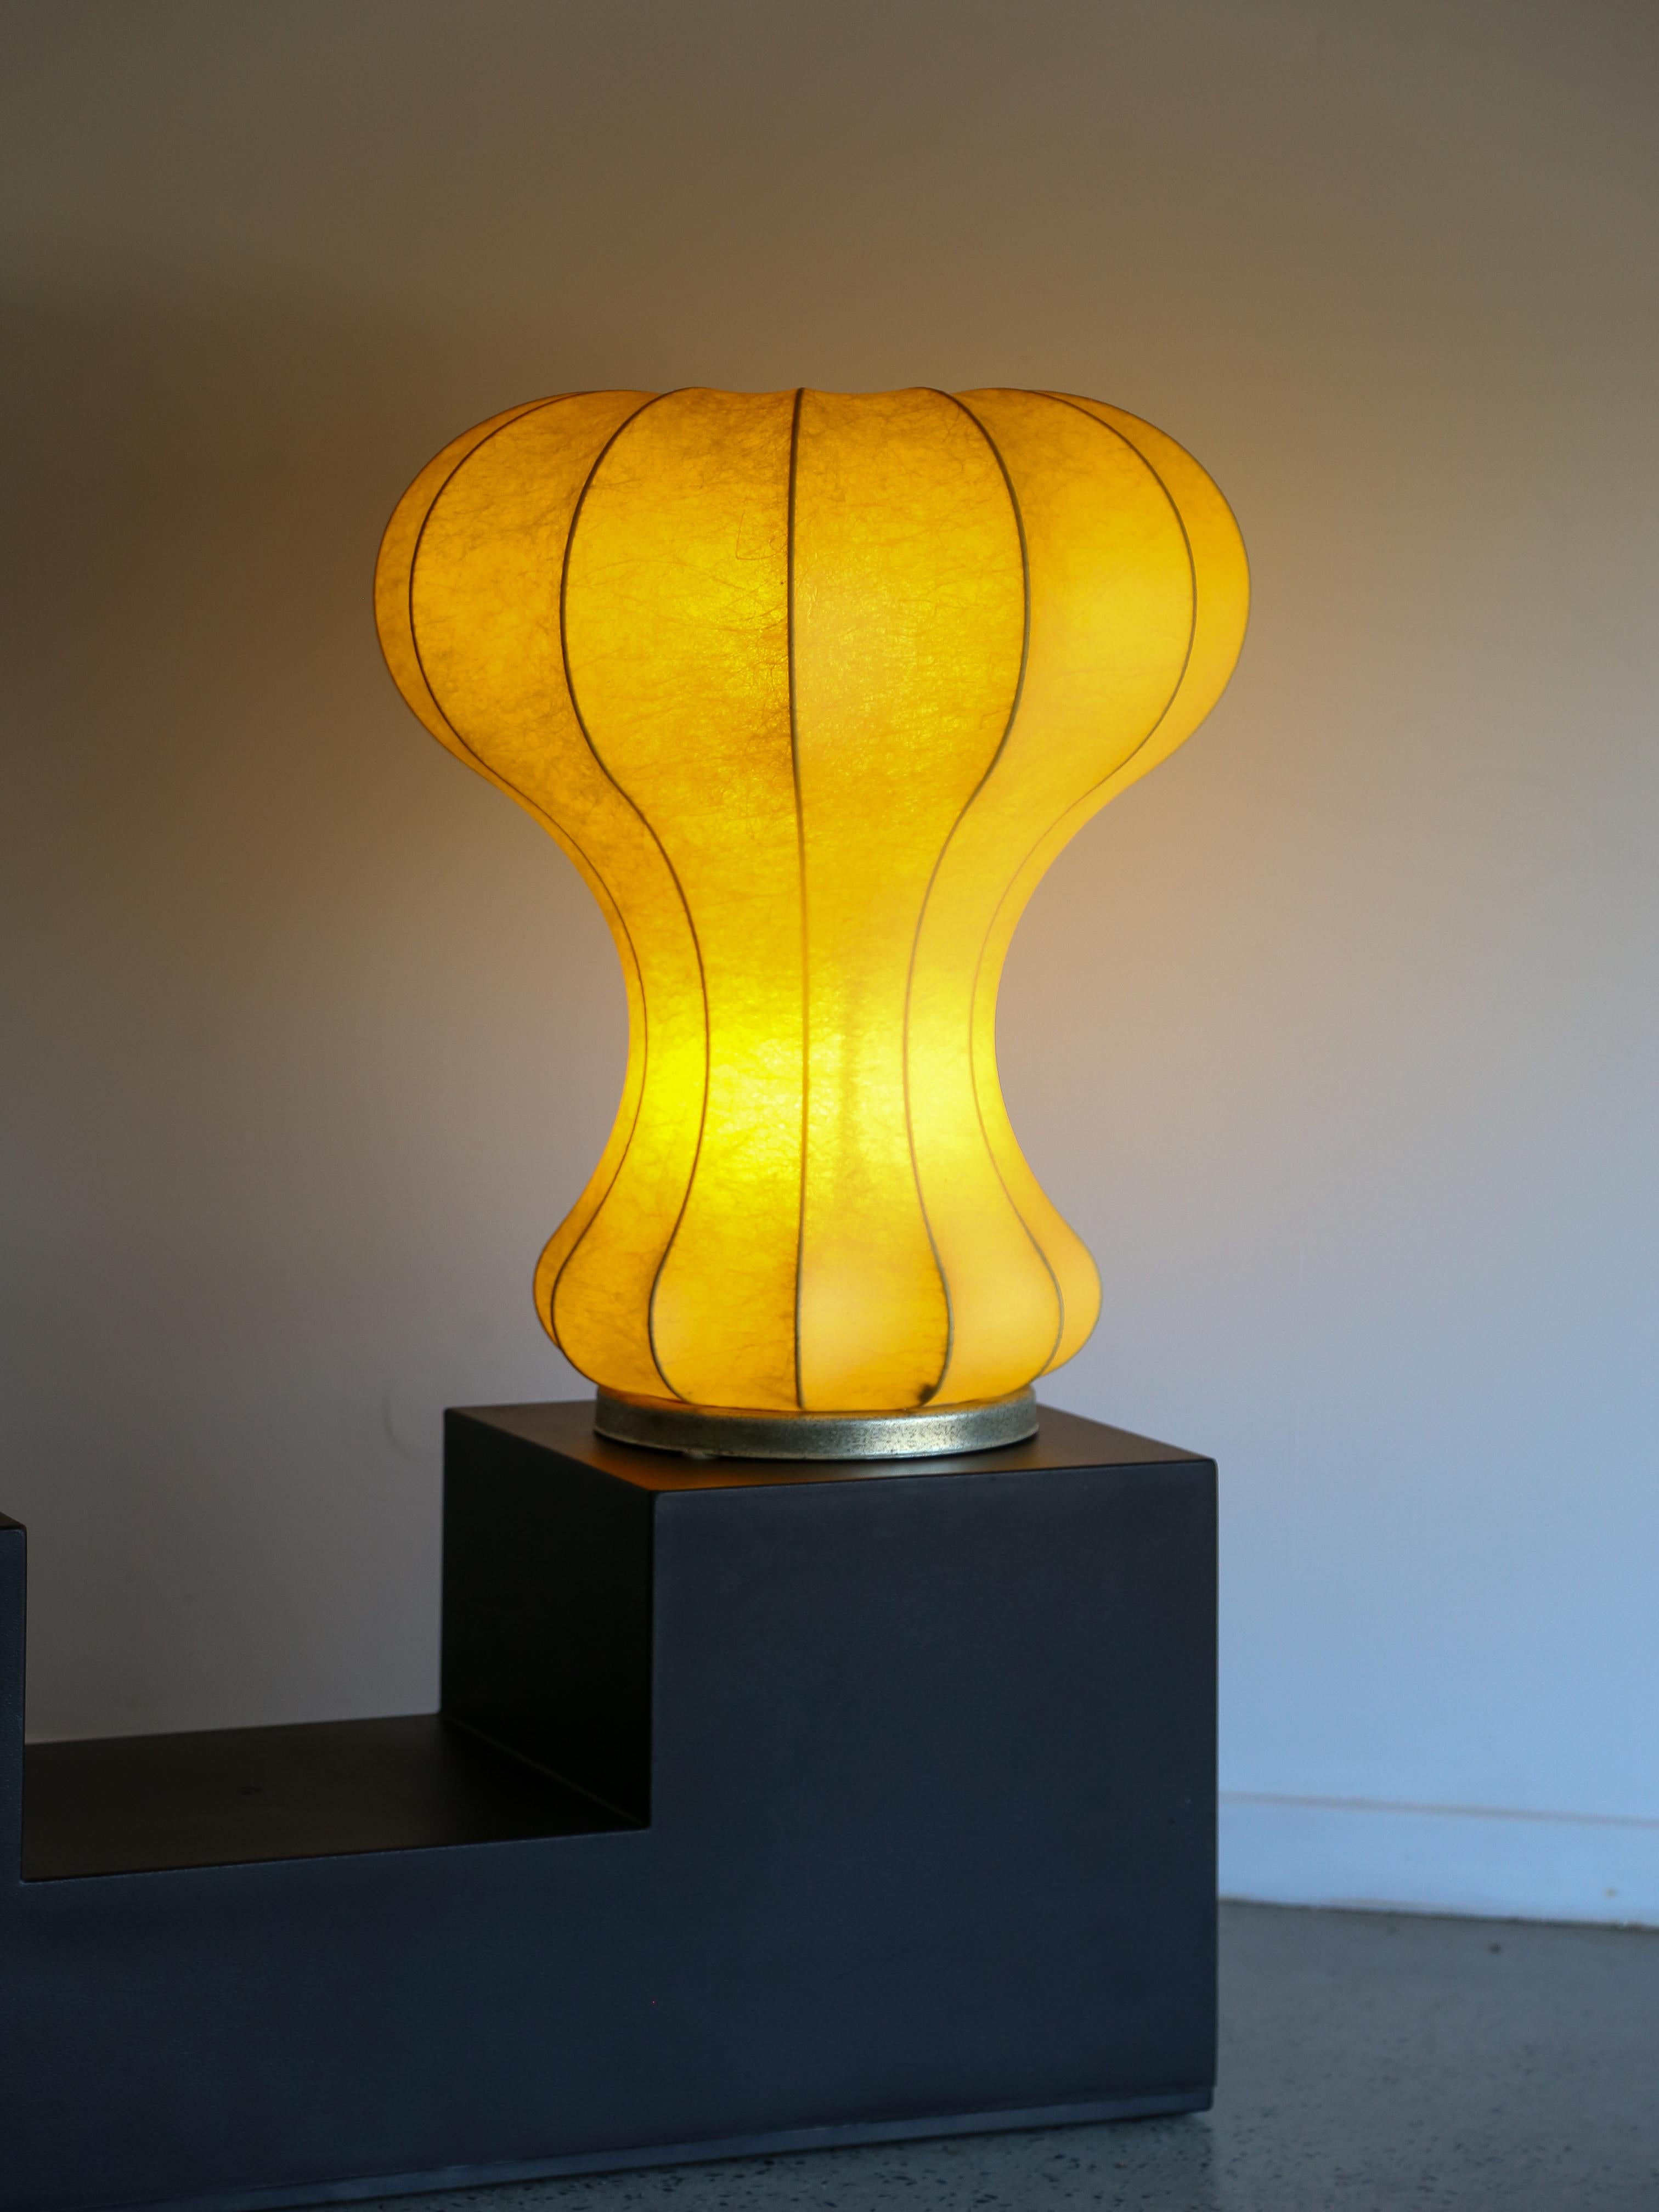 La lampe de table Gatto est une représentation de la philosophie de conception des frères Castiglioni, qui impliquait souvent une combinaison d'innovation fonctionnelle et de sens de la fantaisie. L'utilisation de la résine de cocon dans la